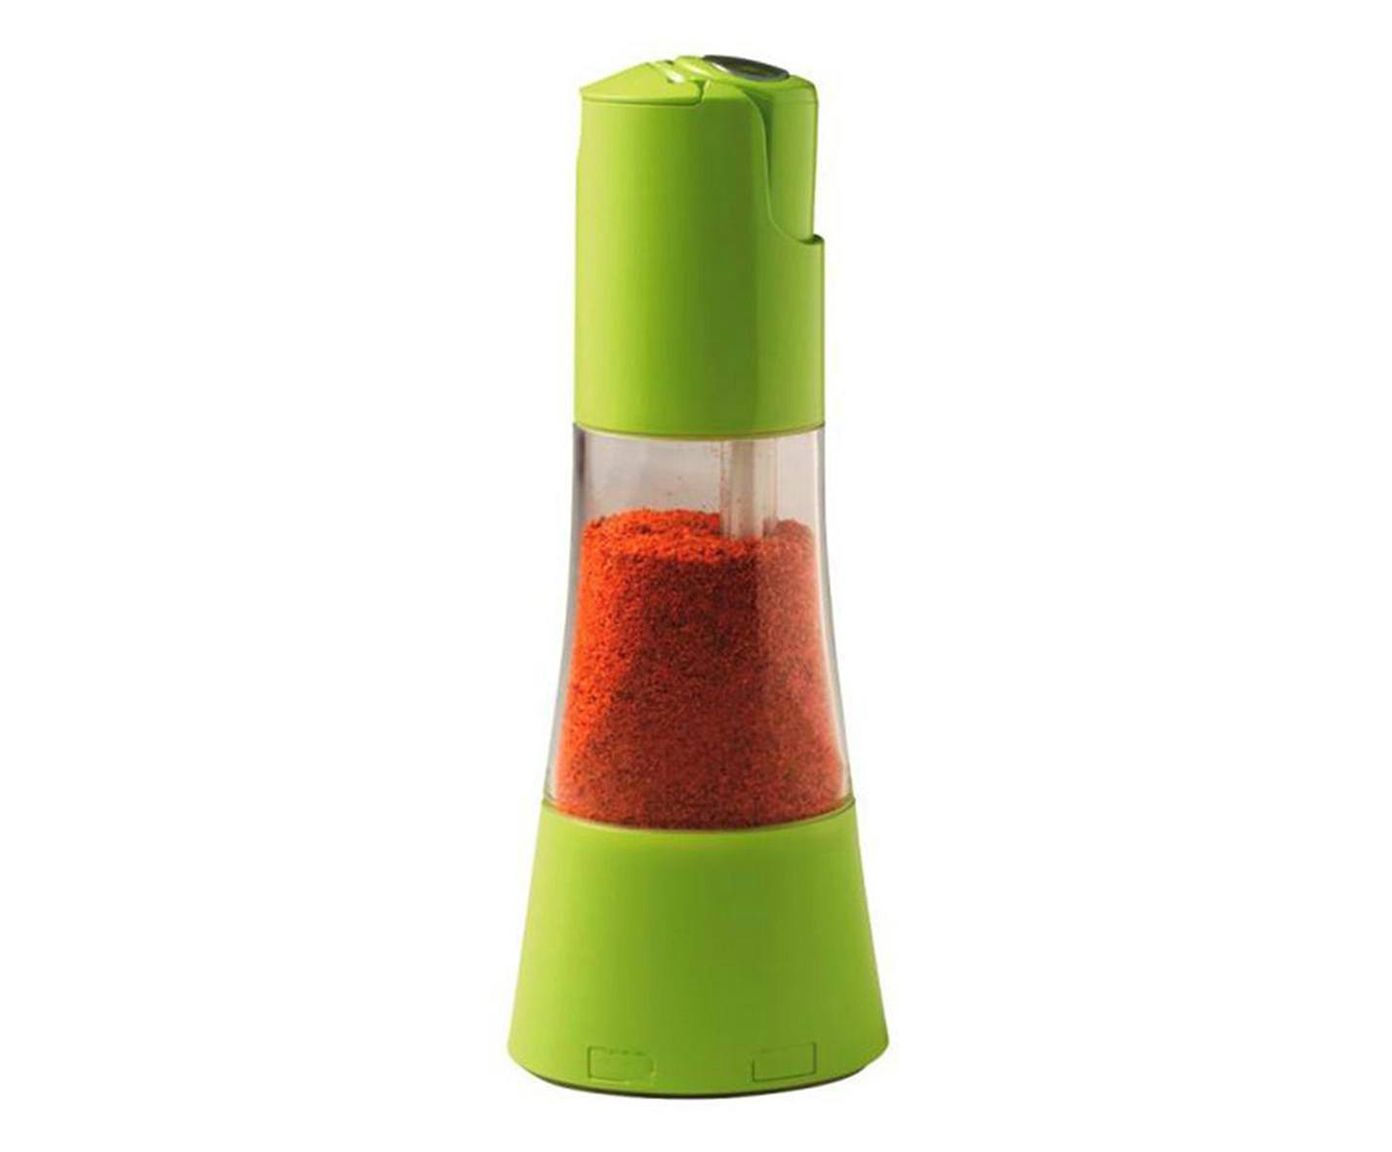 Dosador para Condimentos Spiceshot - Verde | Westwing.com.br